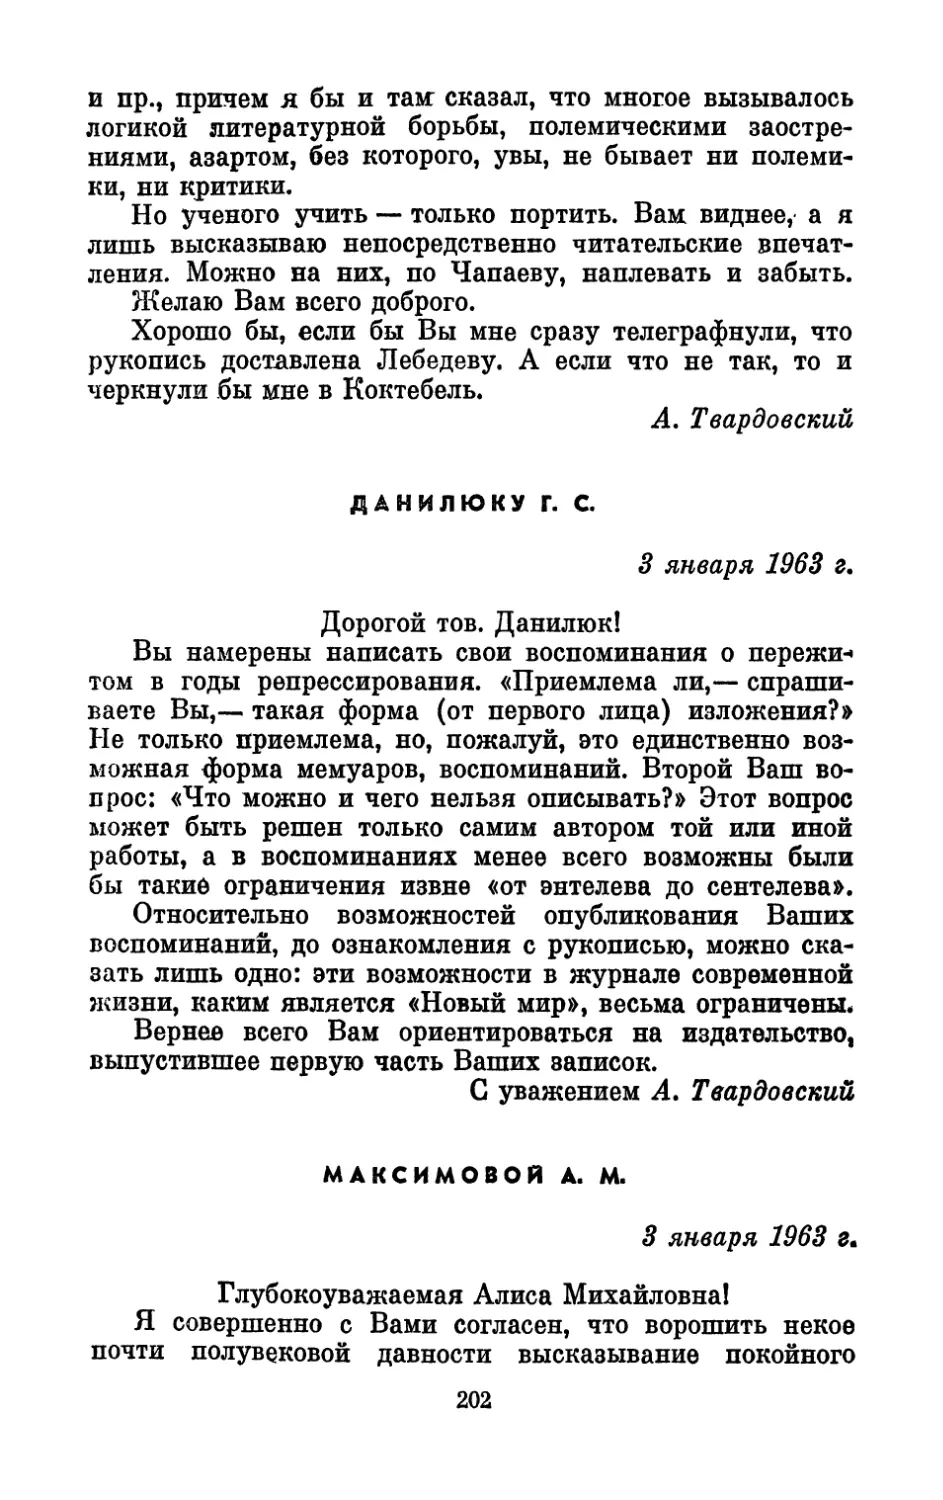 Данилюку Г. С., 3 января 1963 г.
Максимовой А. М., 3 января 1963 г.